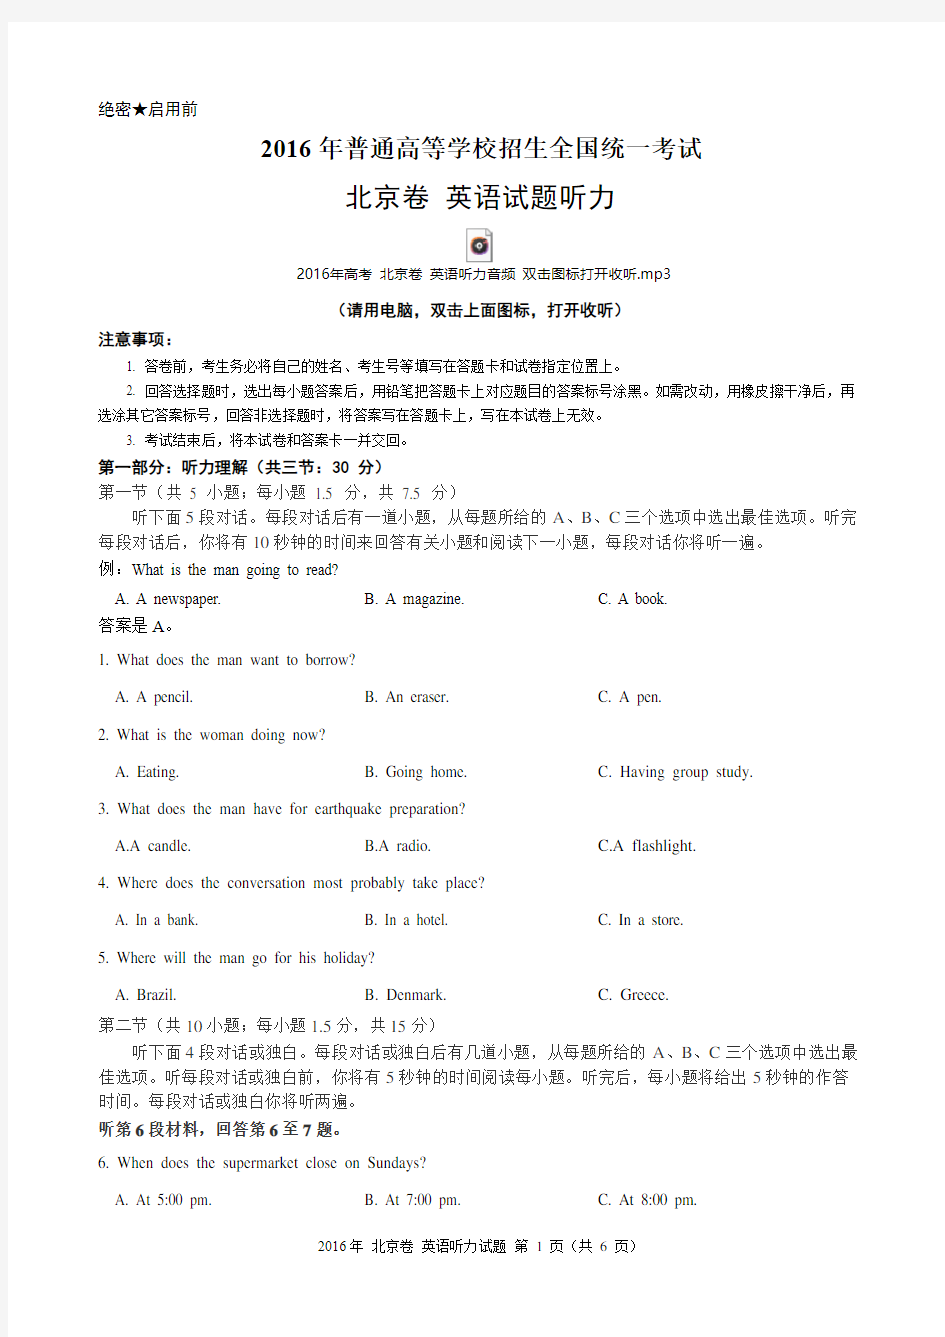 2016年高考北京卷英语听力试题(含试题、听力音频、听力原文和答案)